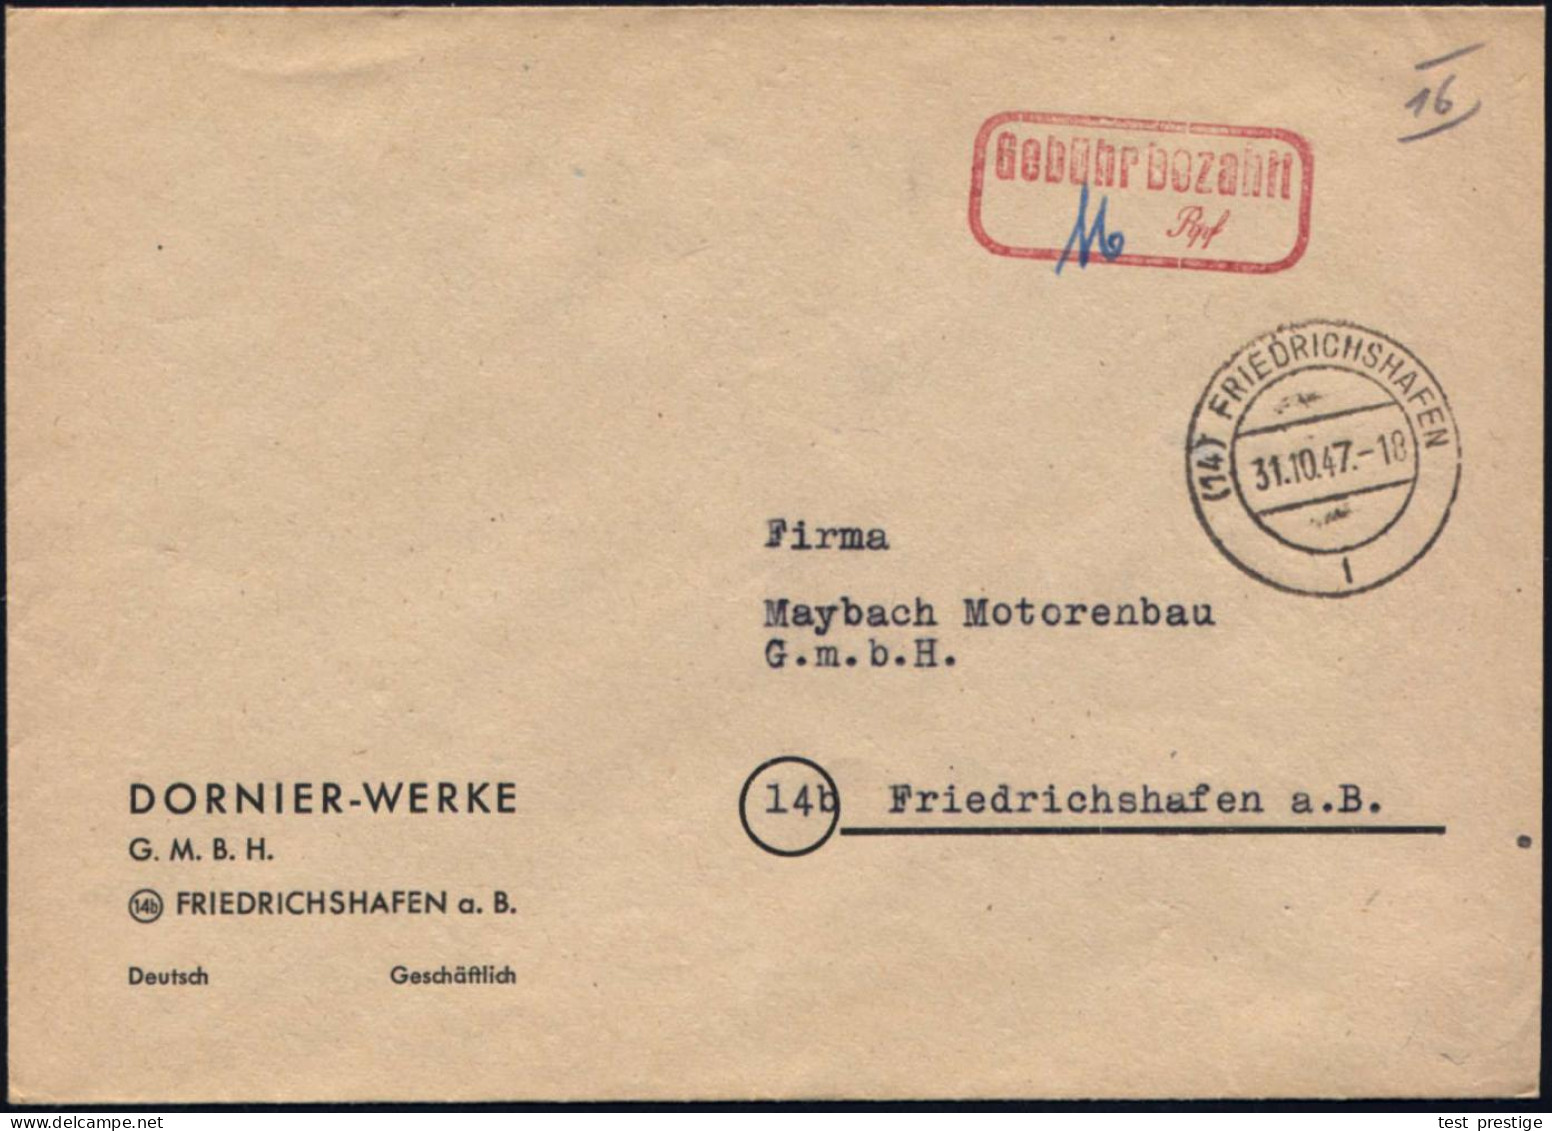 (14) FRIEDRICHSHAFEN/ L 1947 (31.10.) 2K-Steg + Roter Ra2: Gebühr Bezahlt/...Rpf Auf Firmen-Bf: DORNIER-WERKE GMBH + Hs. - Avions